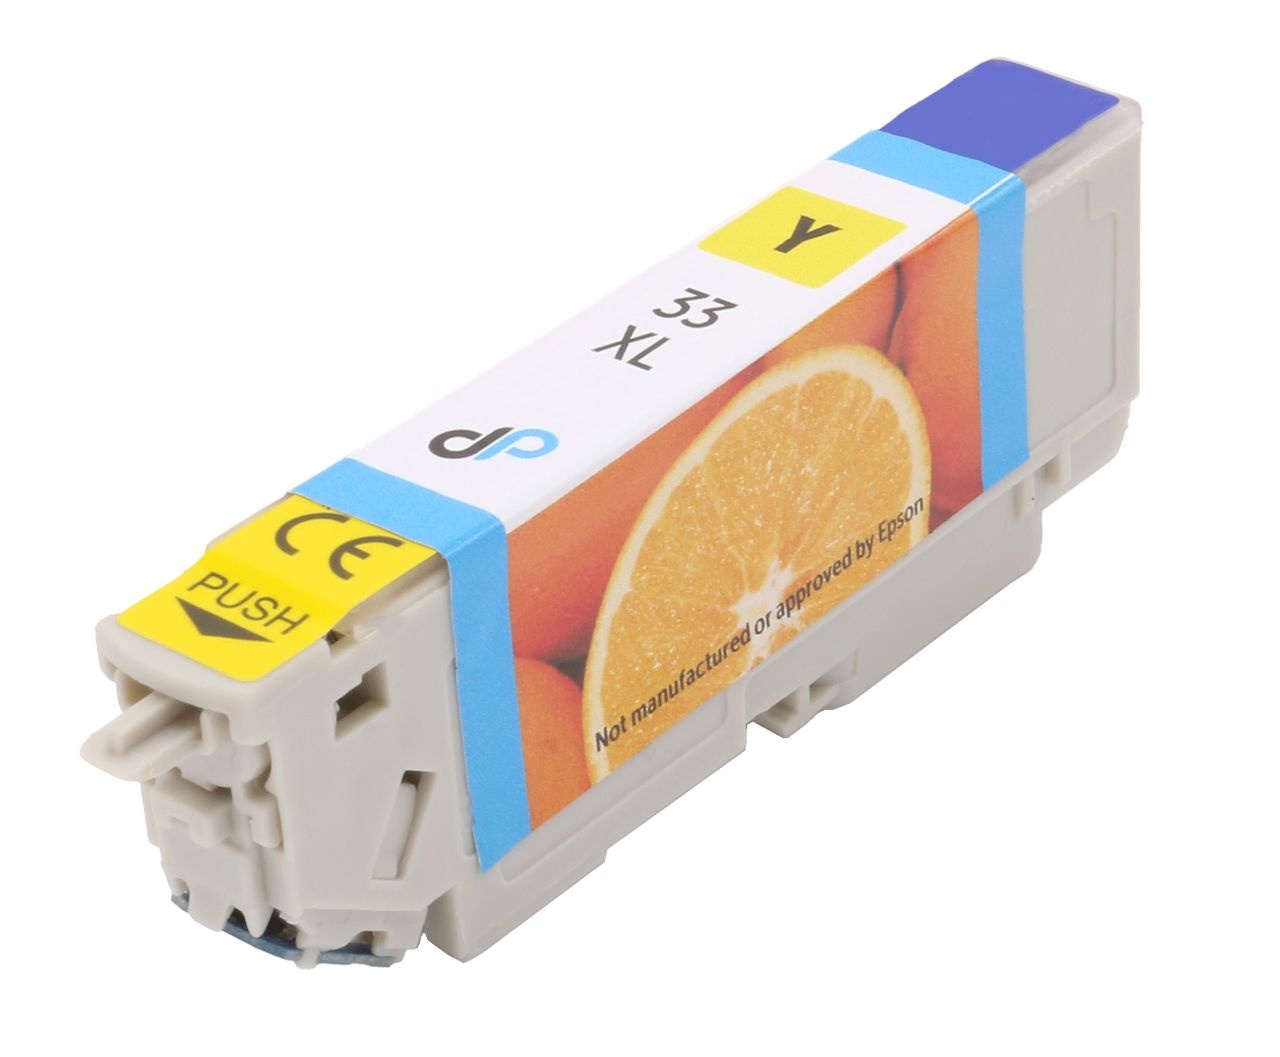 33XL Epson DruckerProfi Tinte Der zu ml 8,9 Kompatibel Orange / - gelb